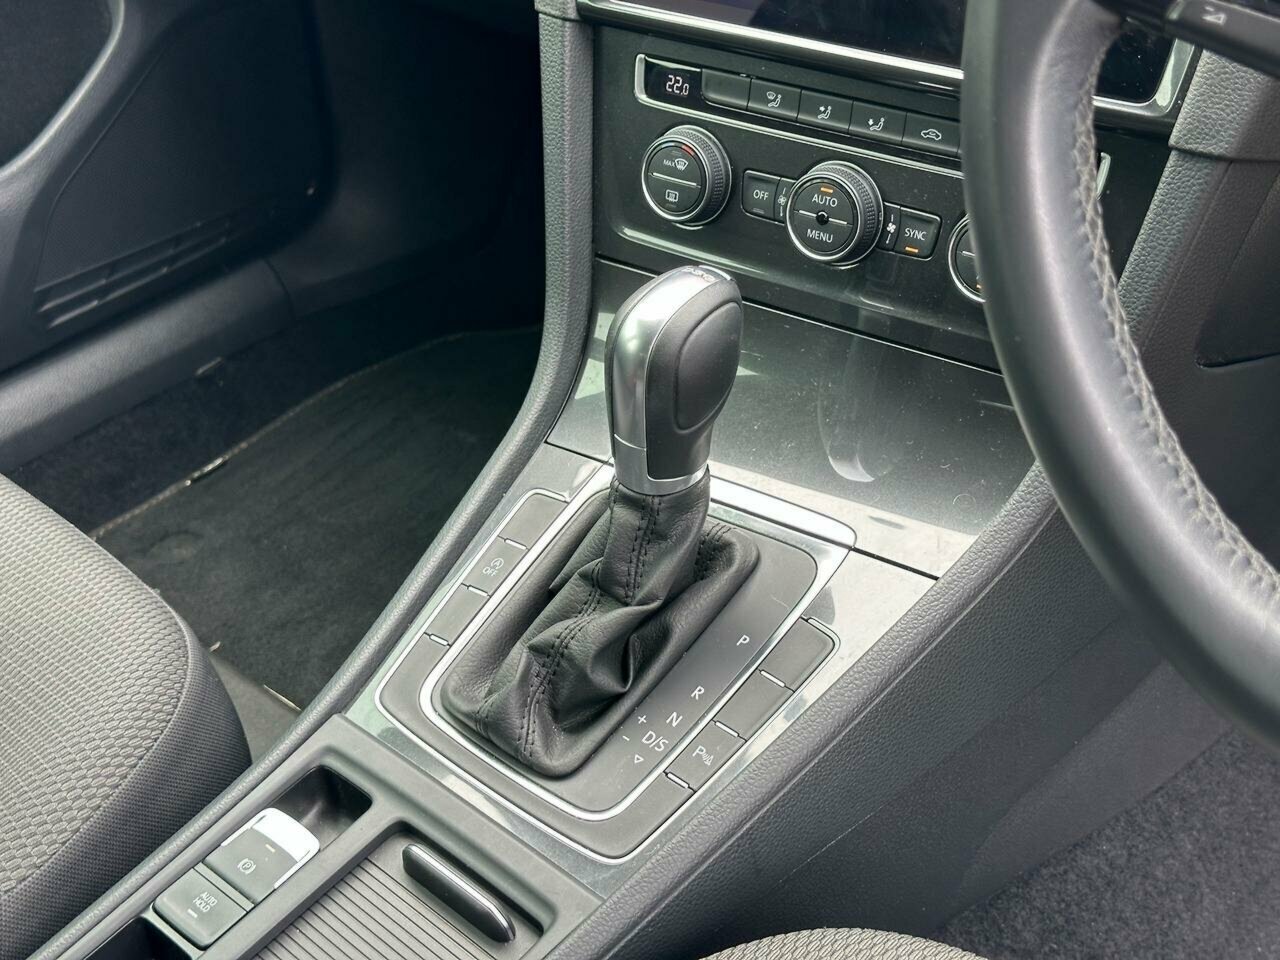 2017 Volkswagen Golf 7.5 MY18 110TSI DSG Comfortline Hatch Image 17